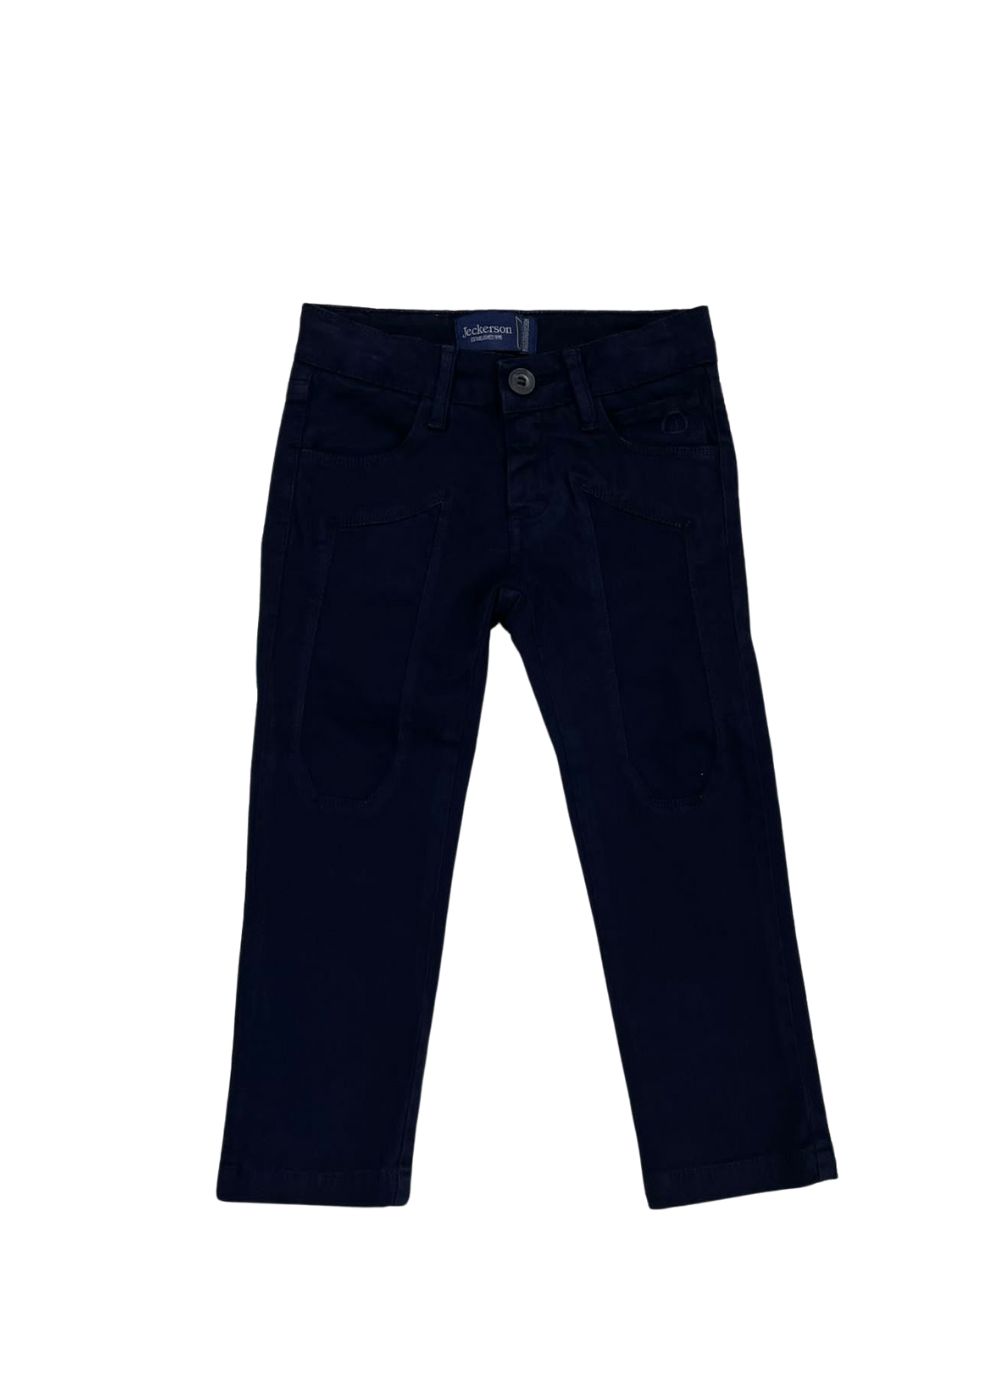 Featured image for “Jeckerson Pantalone Blu Neonato”